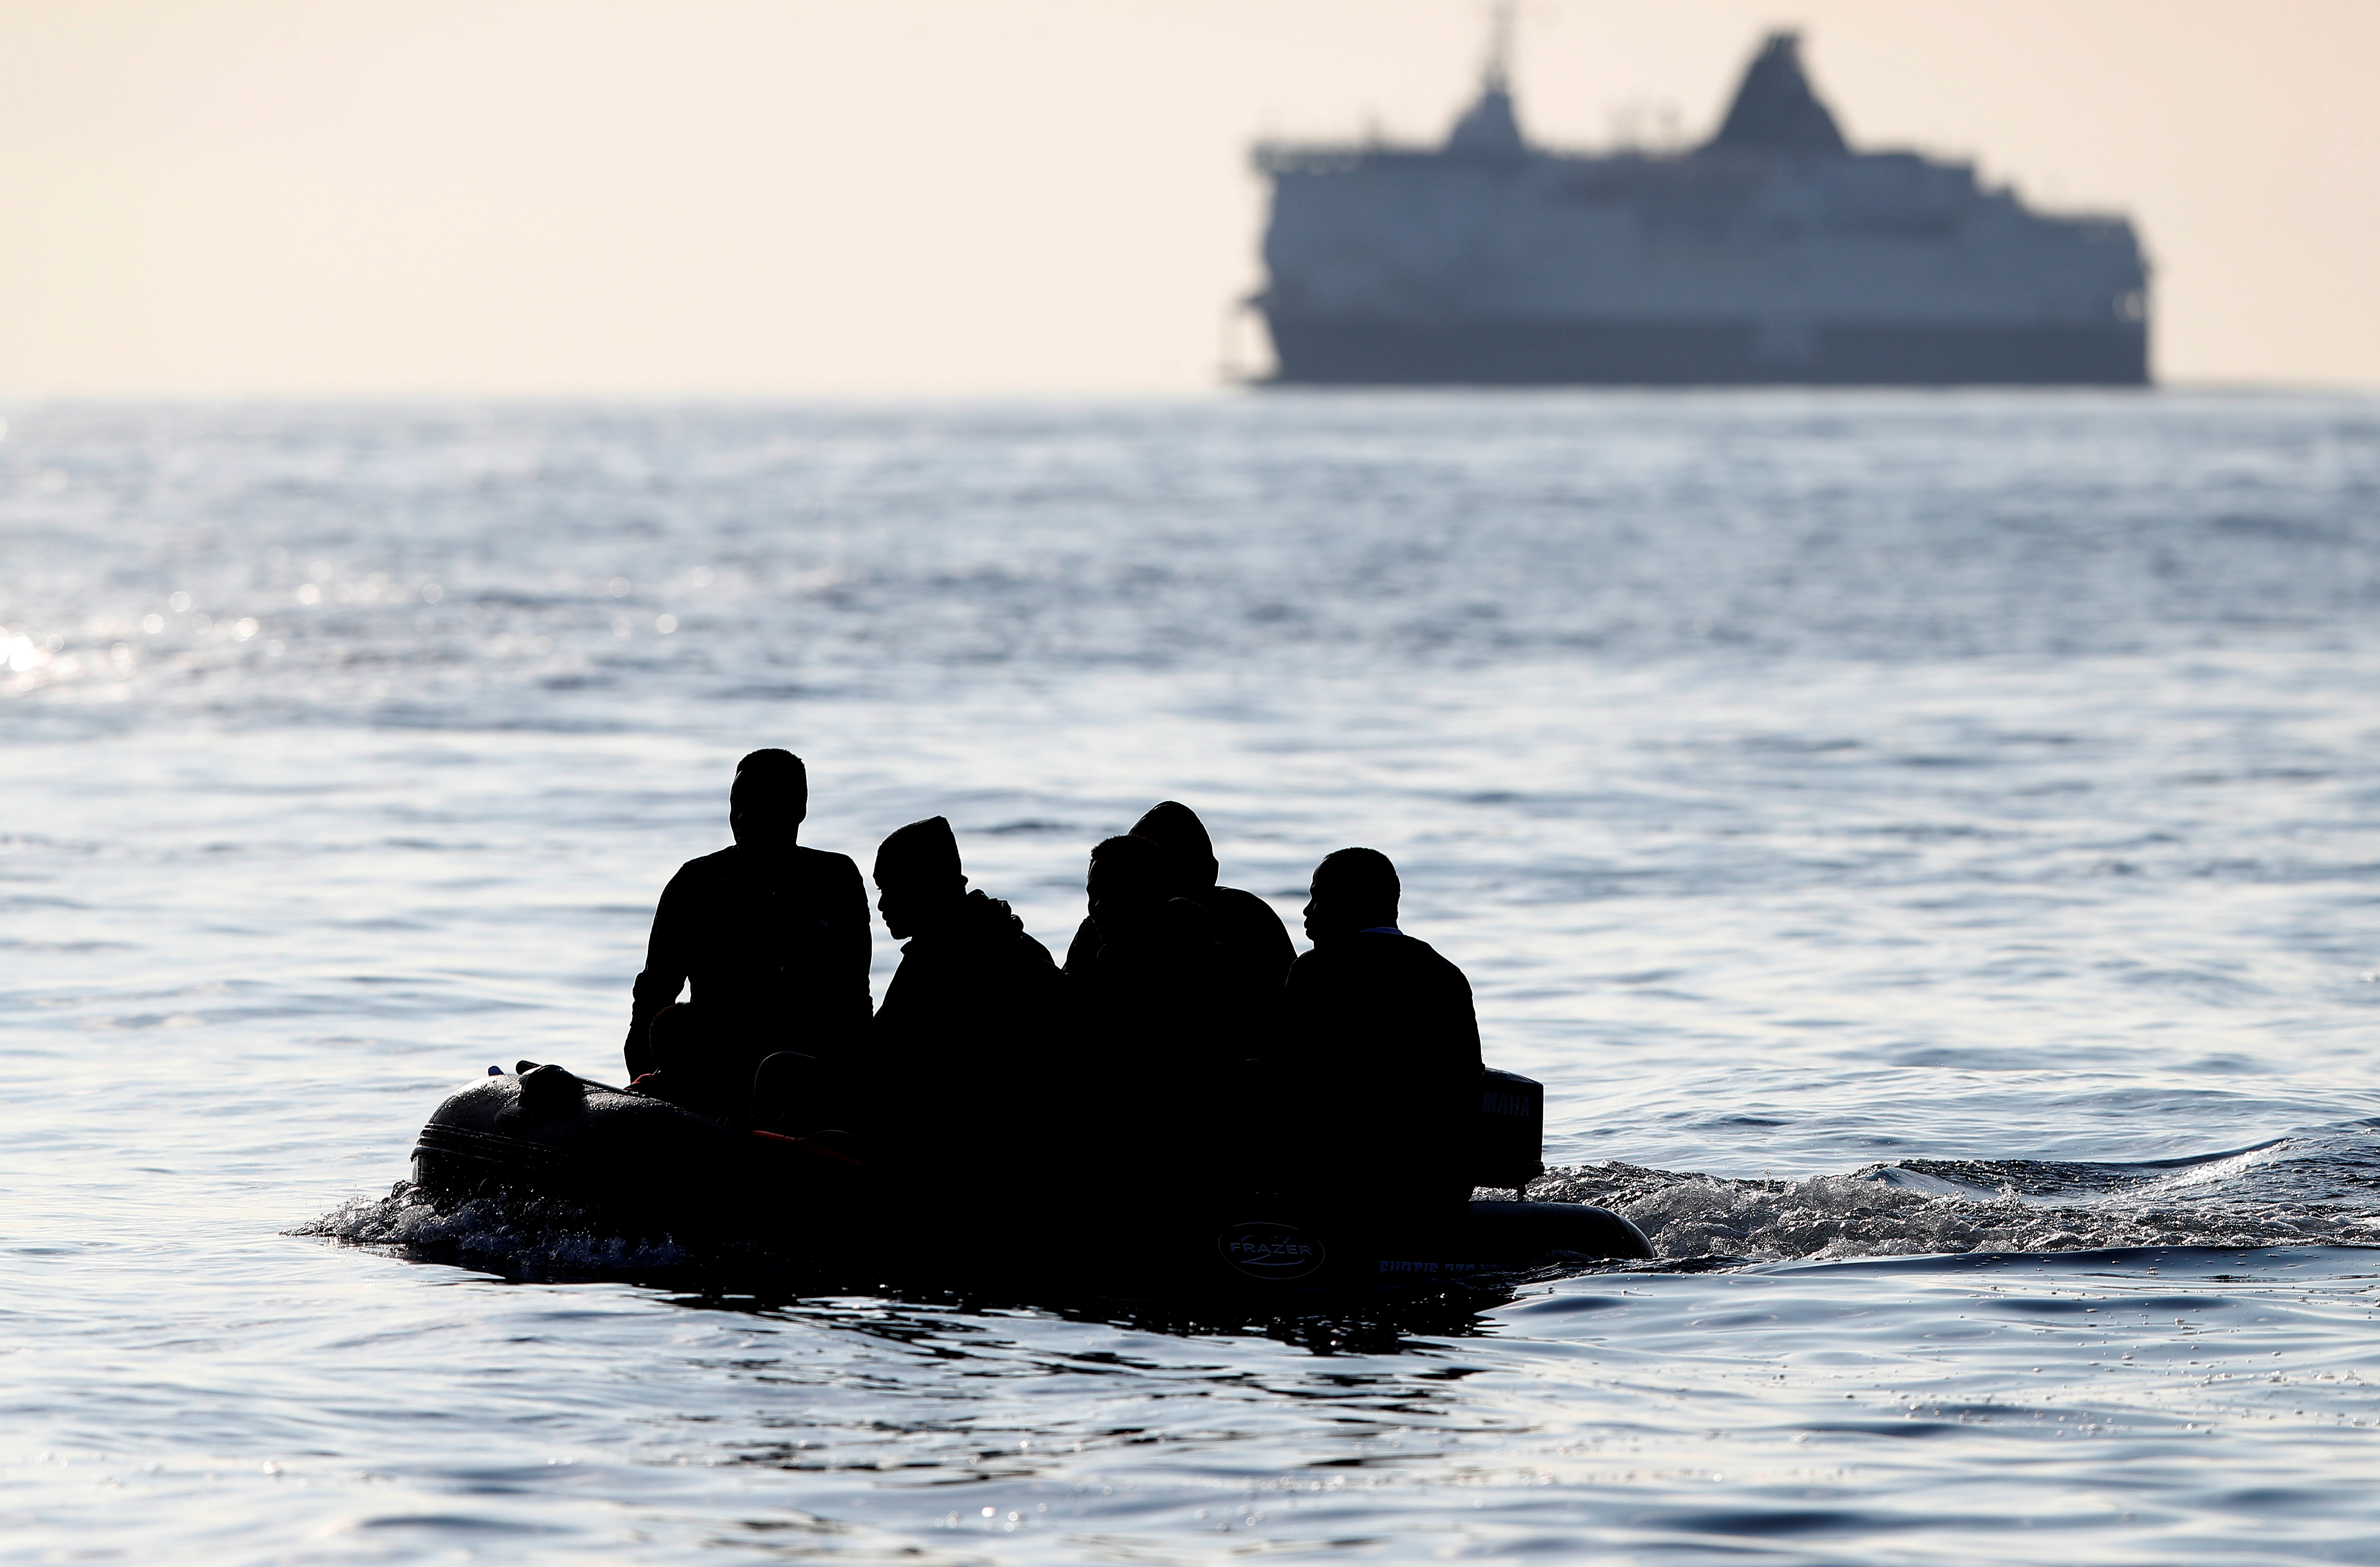 Personas cruzan el Canal de la Mancha en un bote inflable cerca de Dover, Gran Bretaña (Reuters)